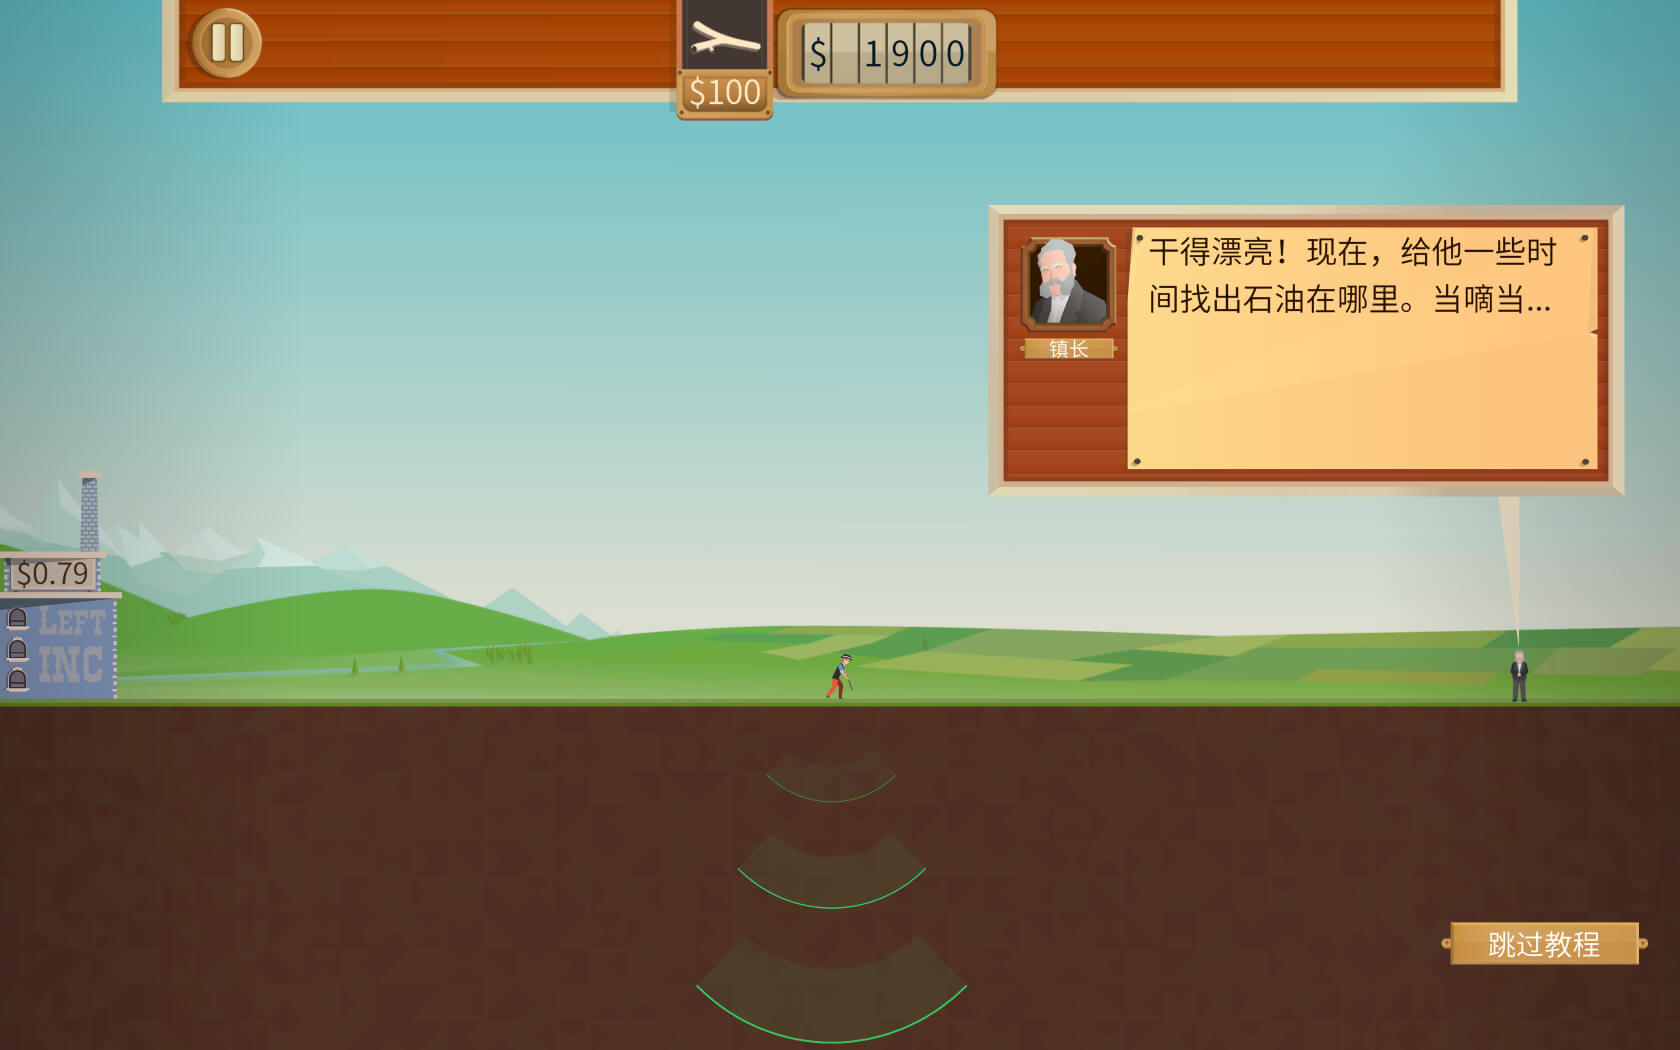 石油骚动 for Mac v3.1.3 Turmoil 中文原生版 含DLC热力沸腾 苹果电脑